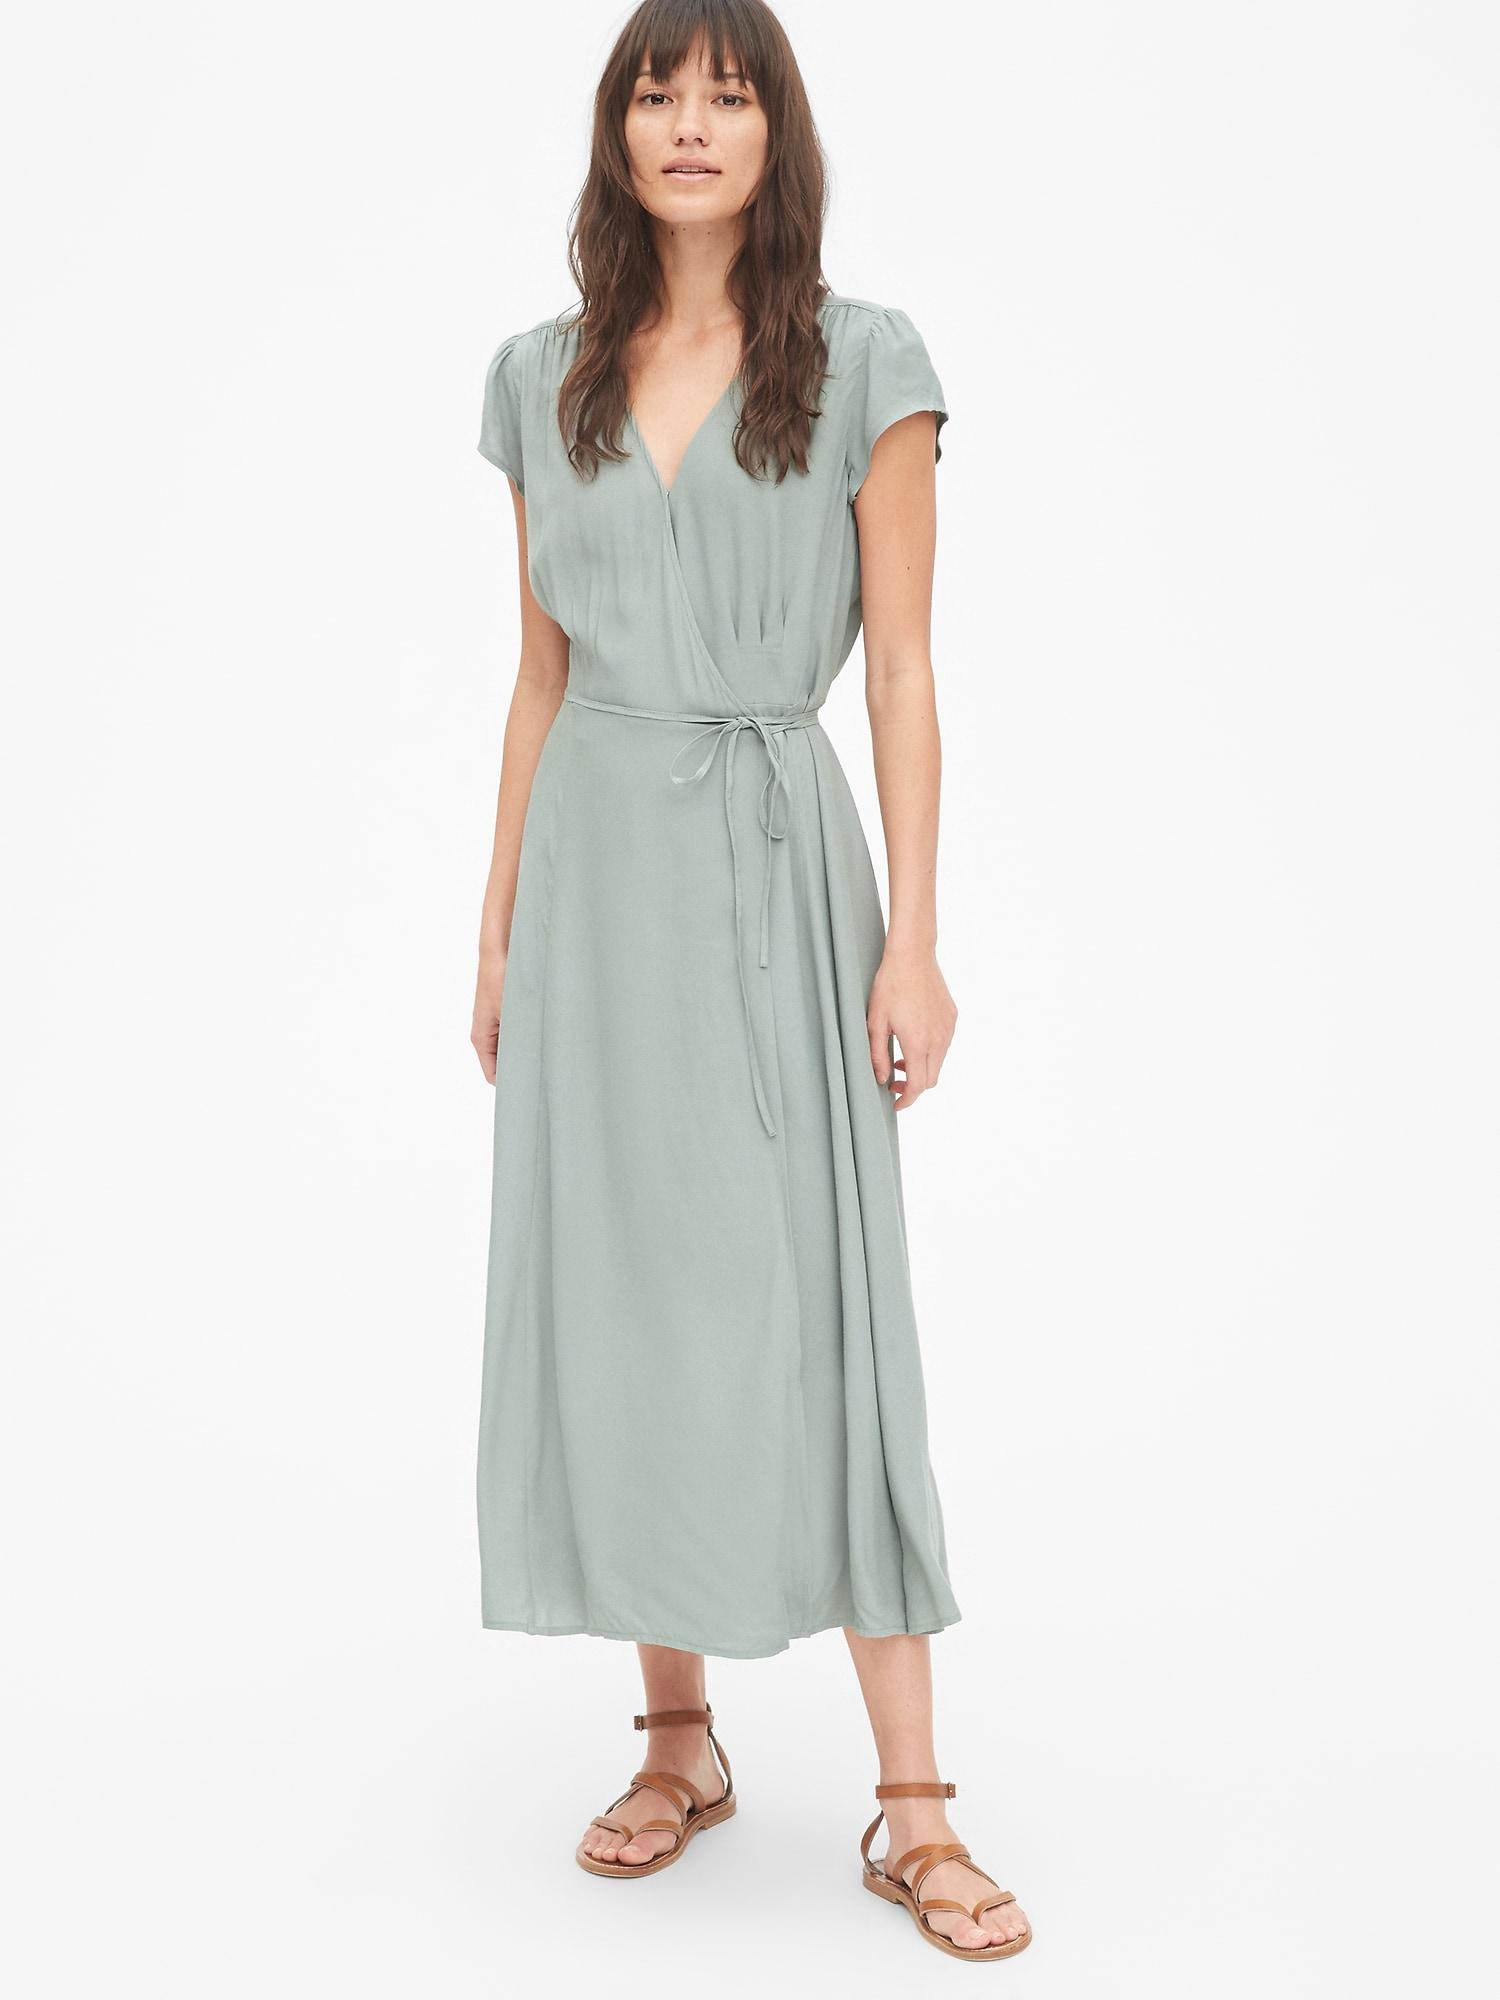 Gap Green Dress Hot Sale, 58% OFF | www ...